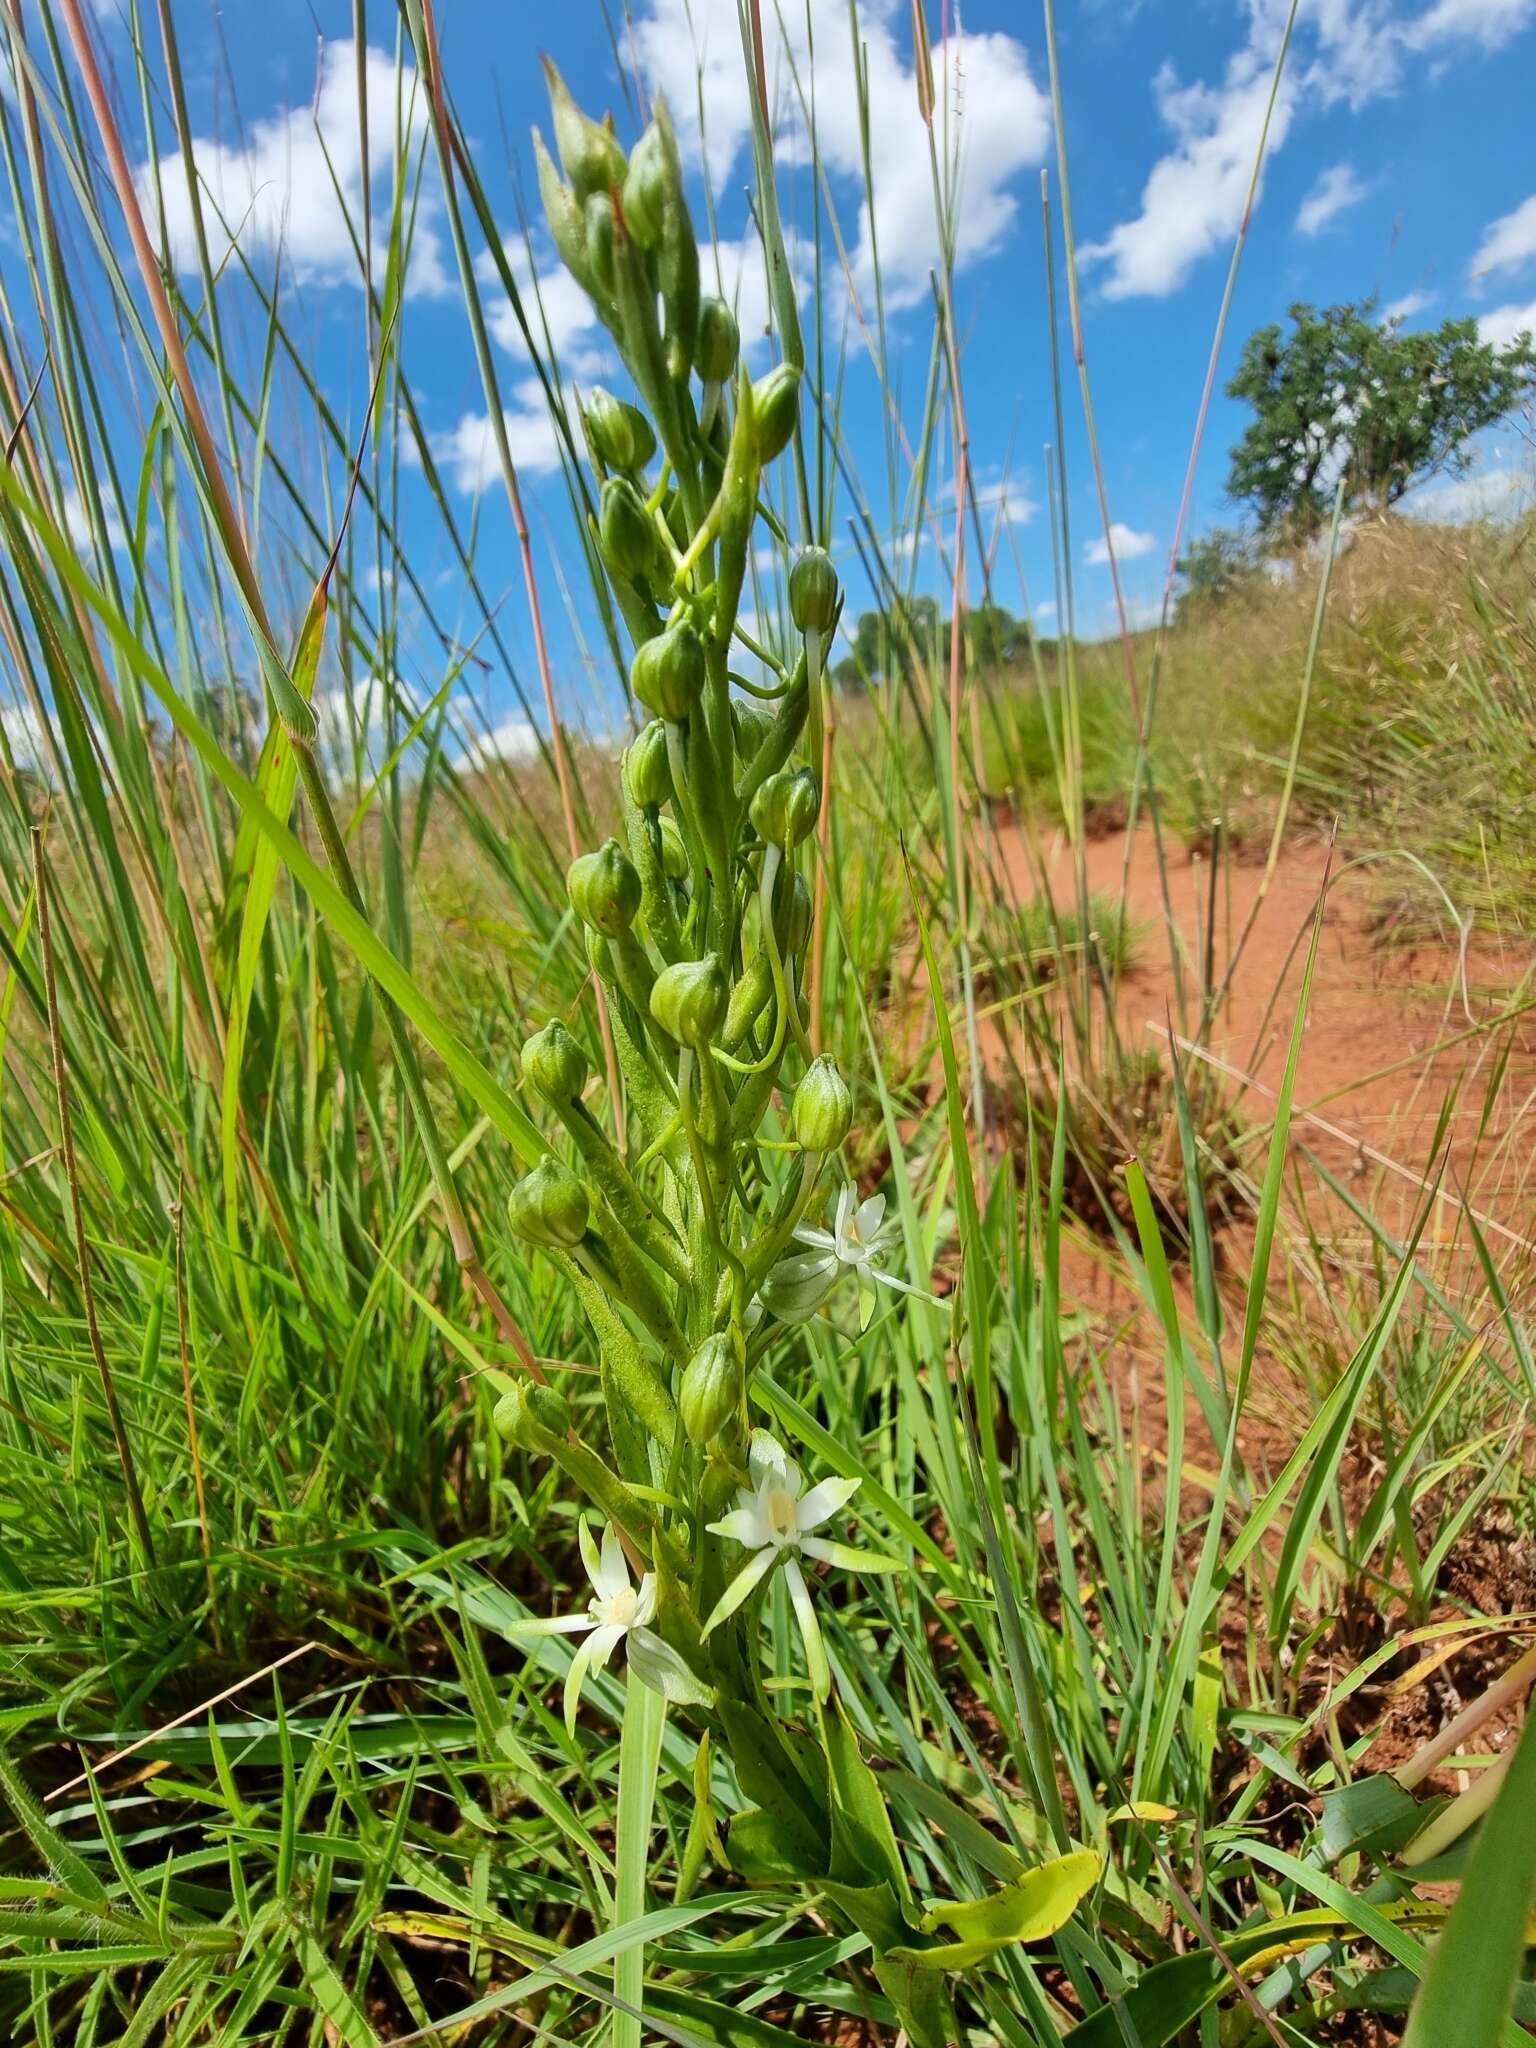 Image of Habenaria caffra Schltr.